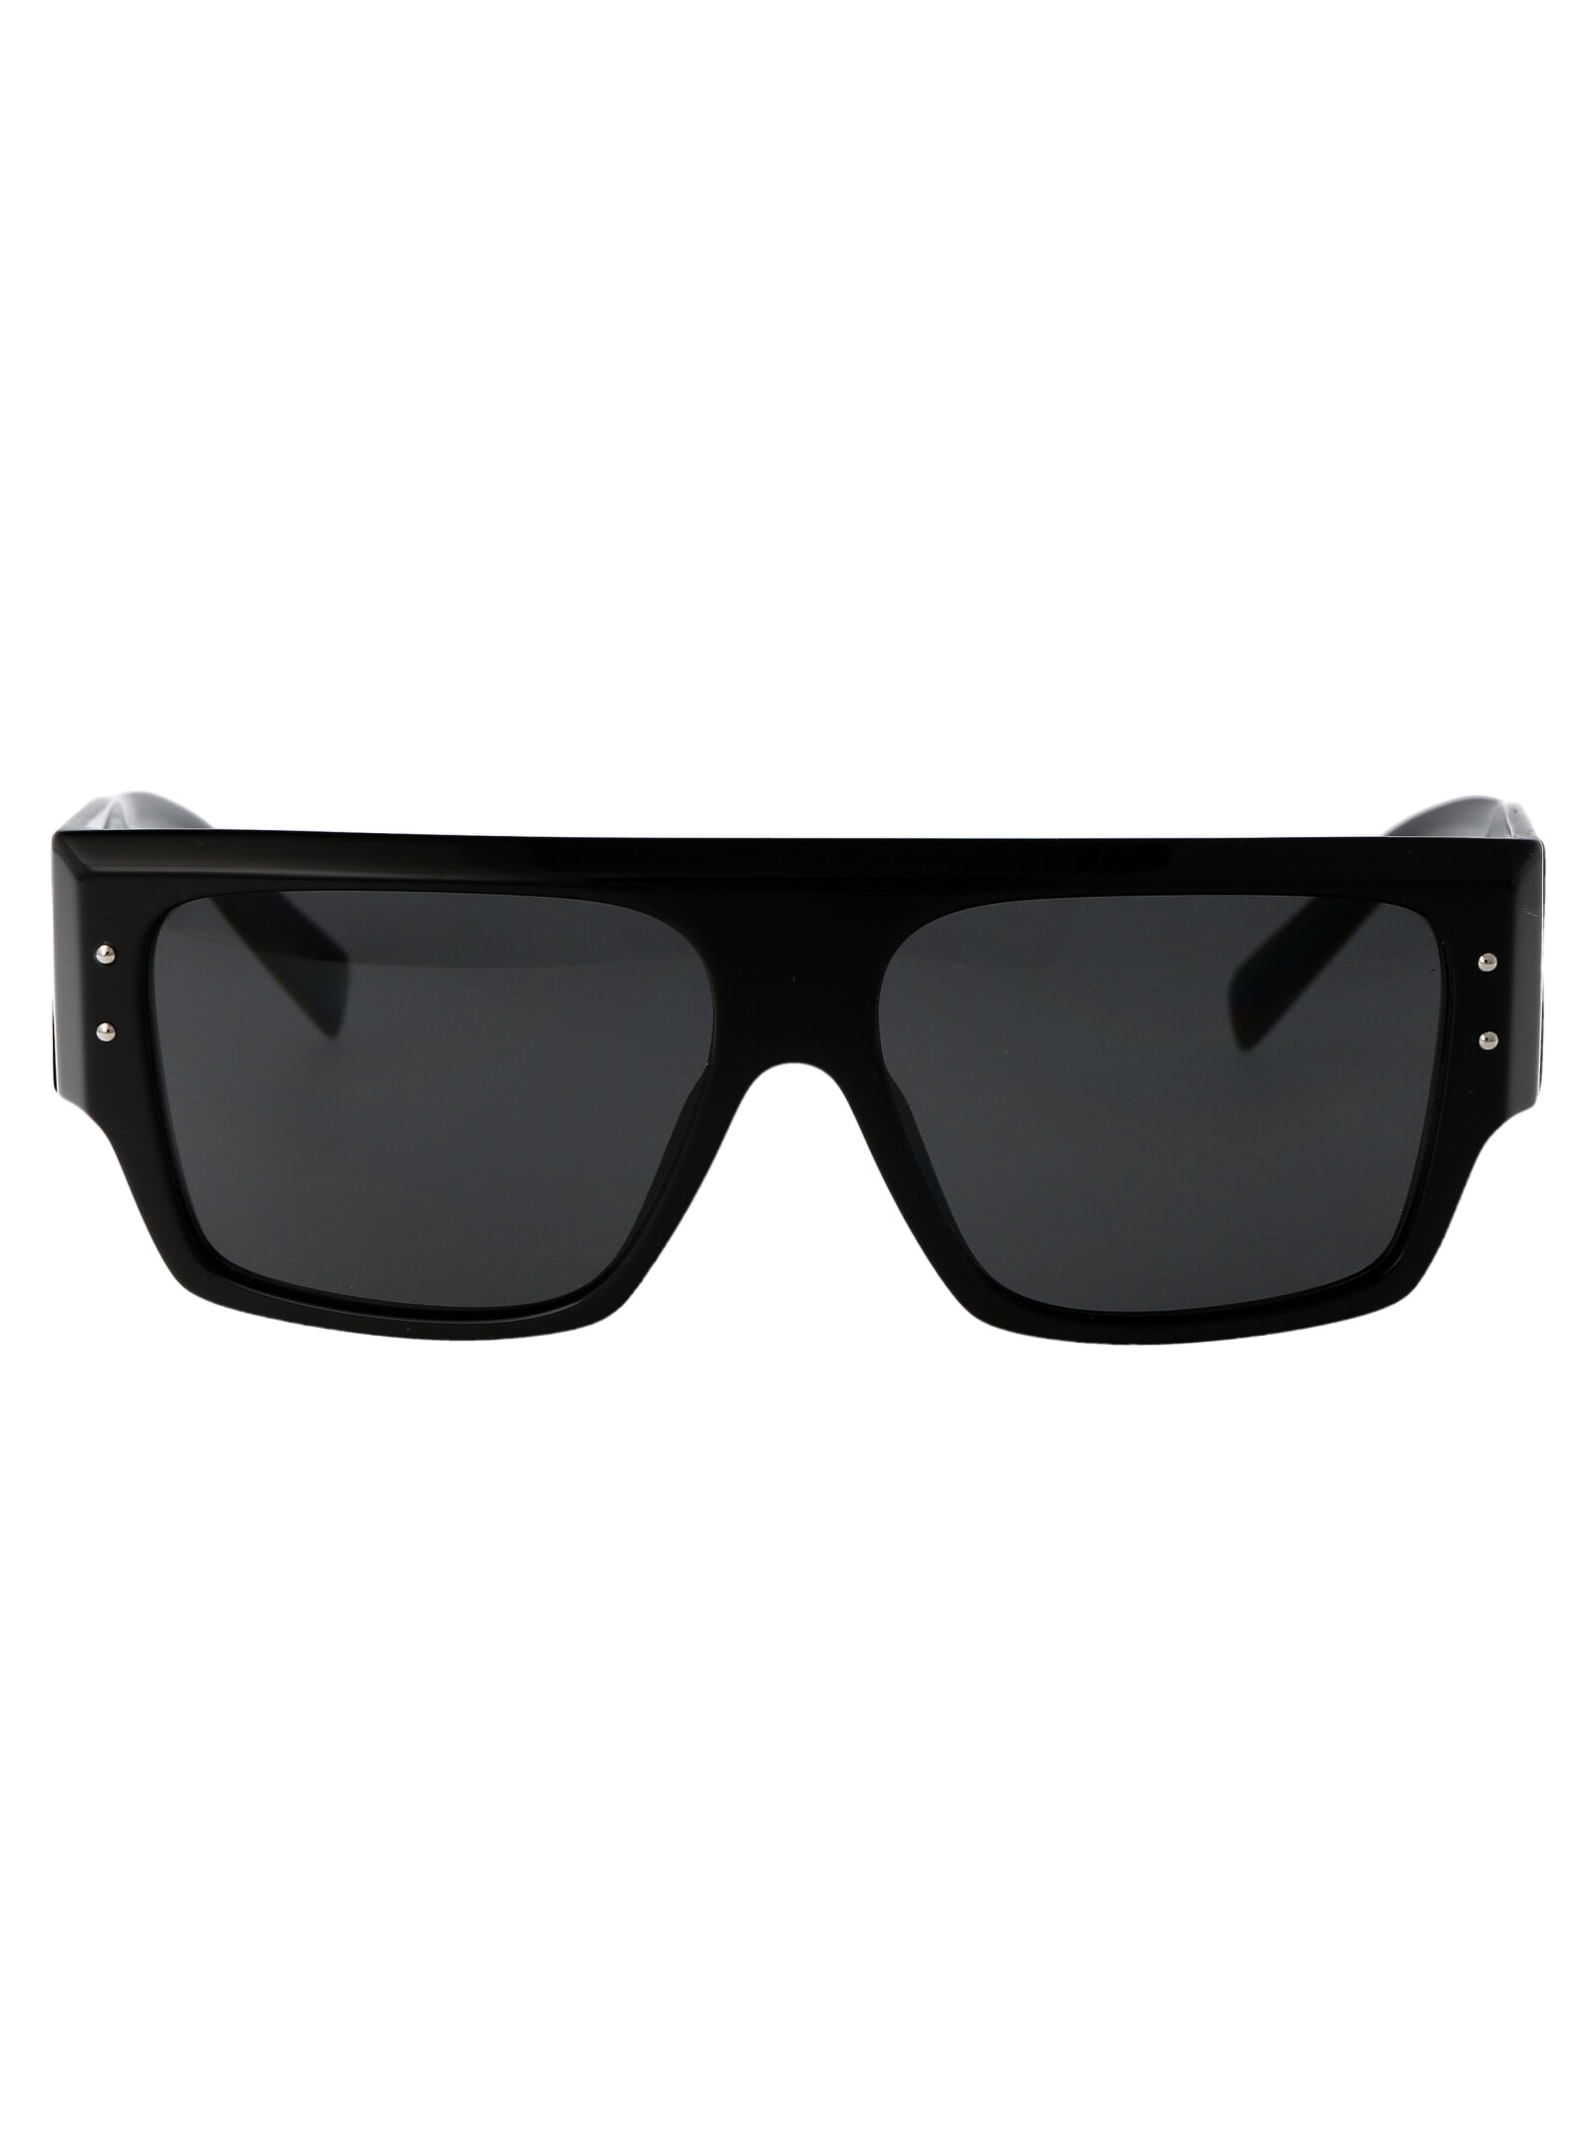 Dolce &amp; Gabbana Eyewear 0dg4459 Sunglasses In 501/87 Black